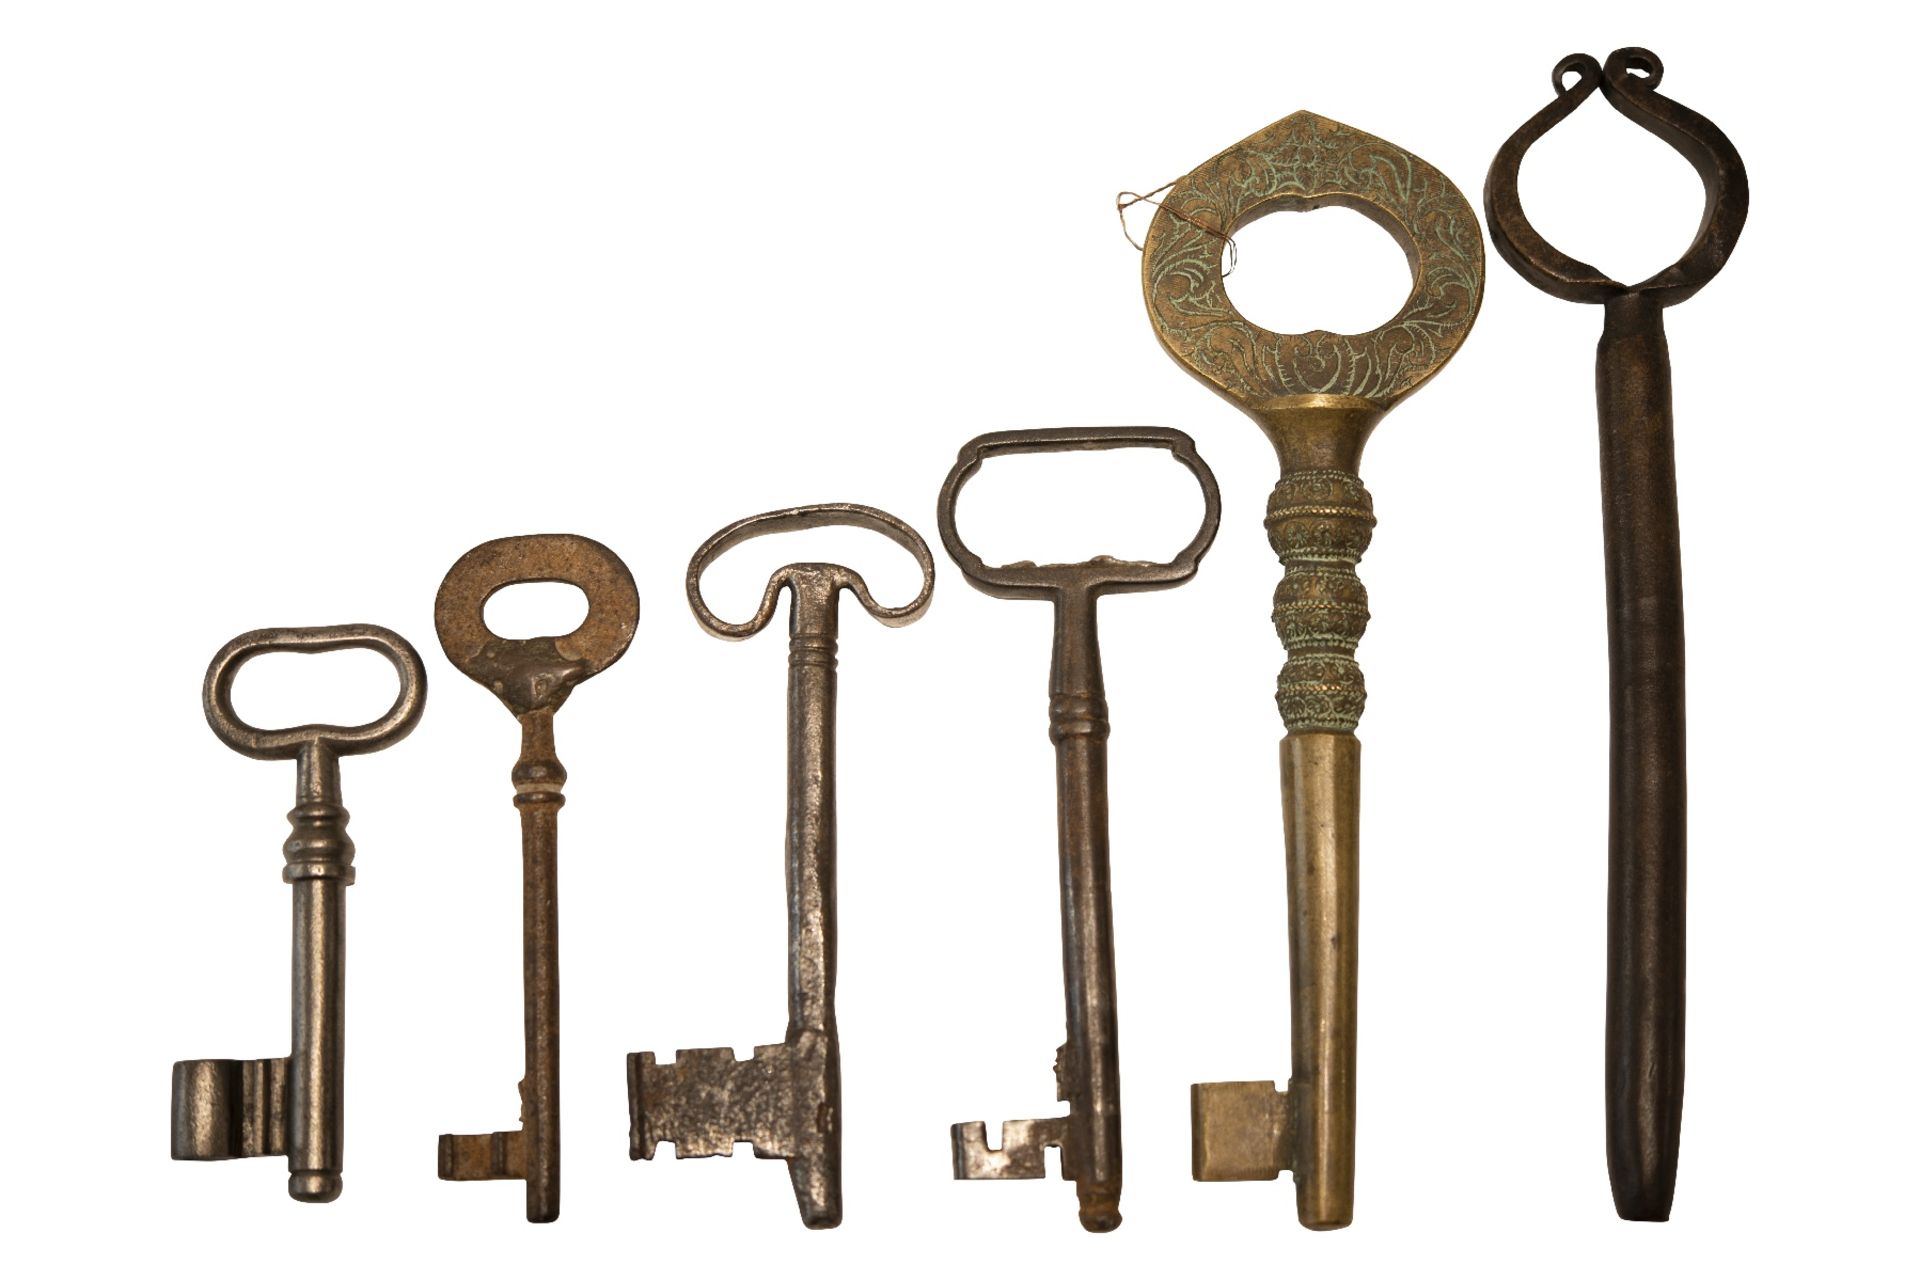 Old Palace Keys